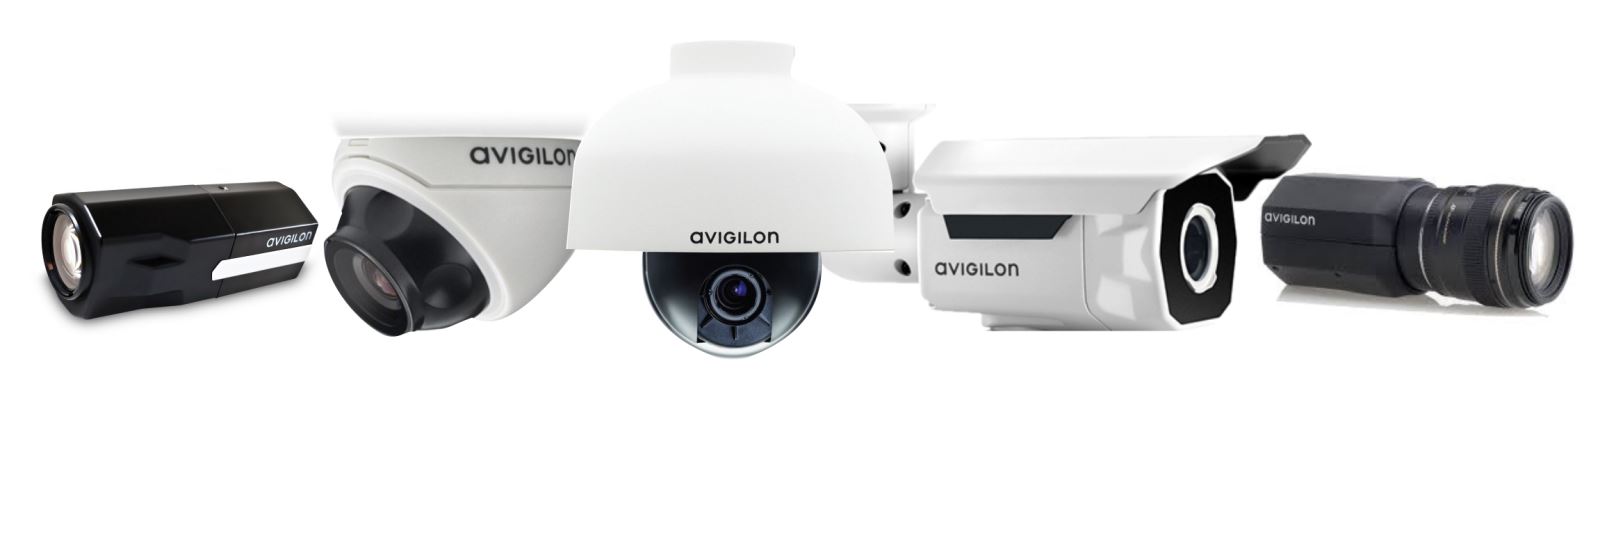 Avigilon Surveillance Cameras for Stadiums and Event Centres